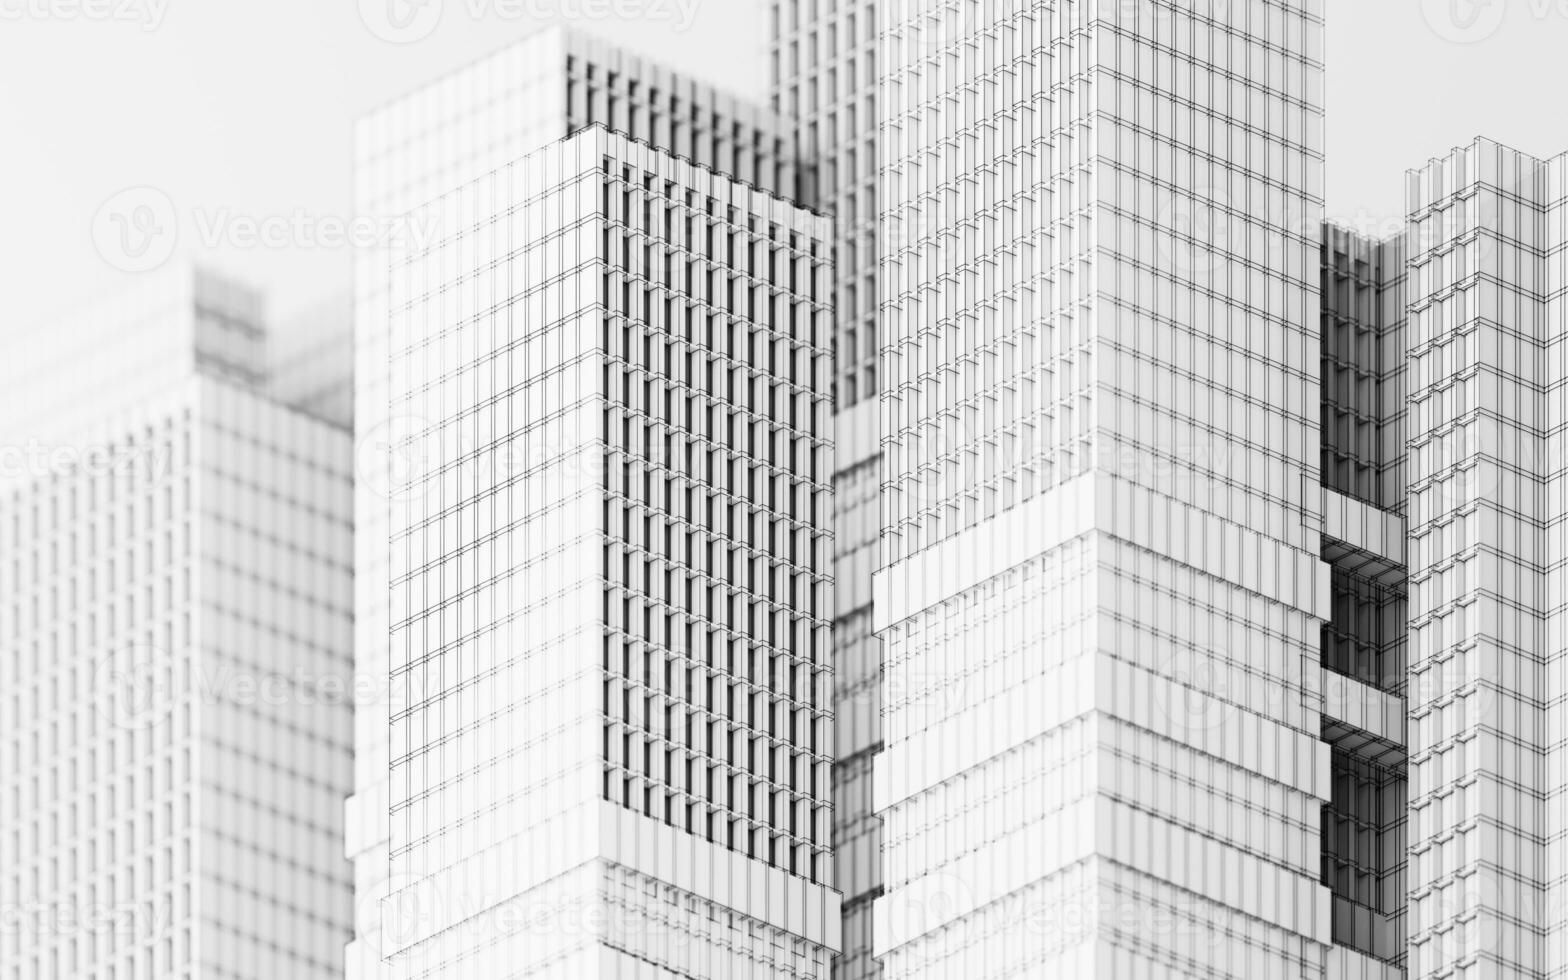 urbano edificio durante el día, modular edificio, 3d representación. foto